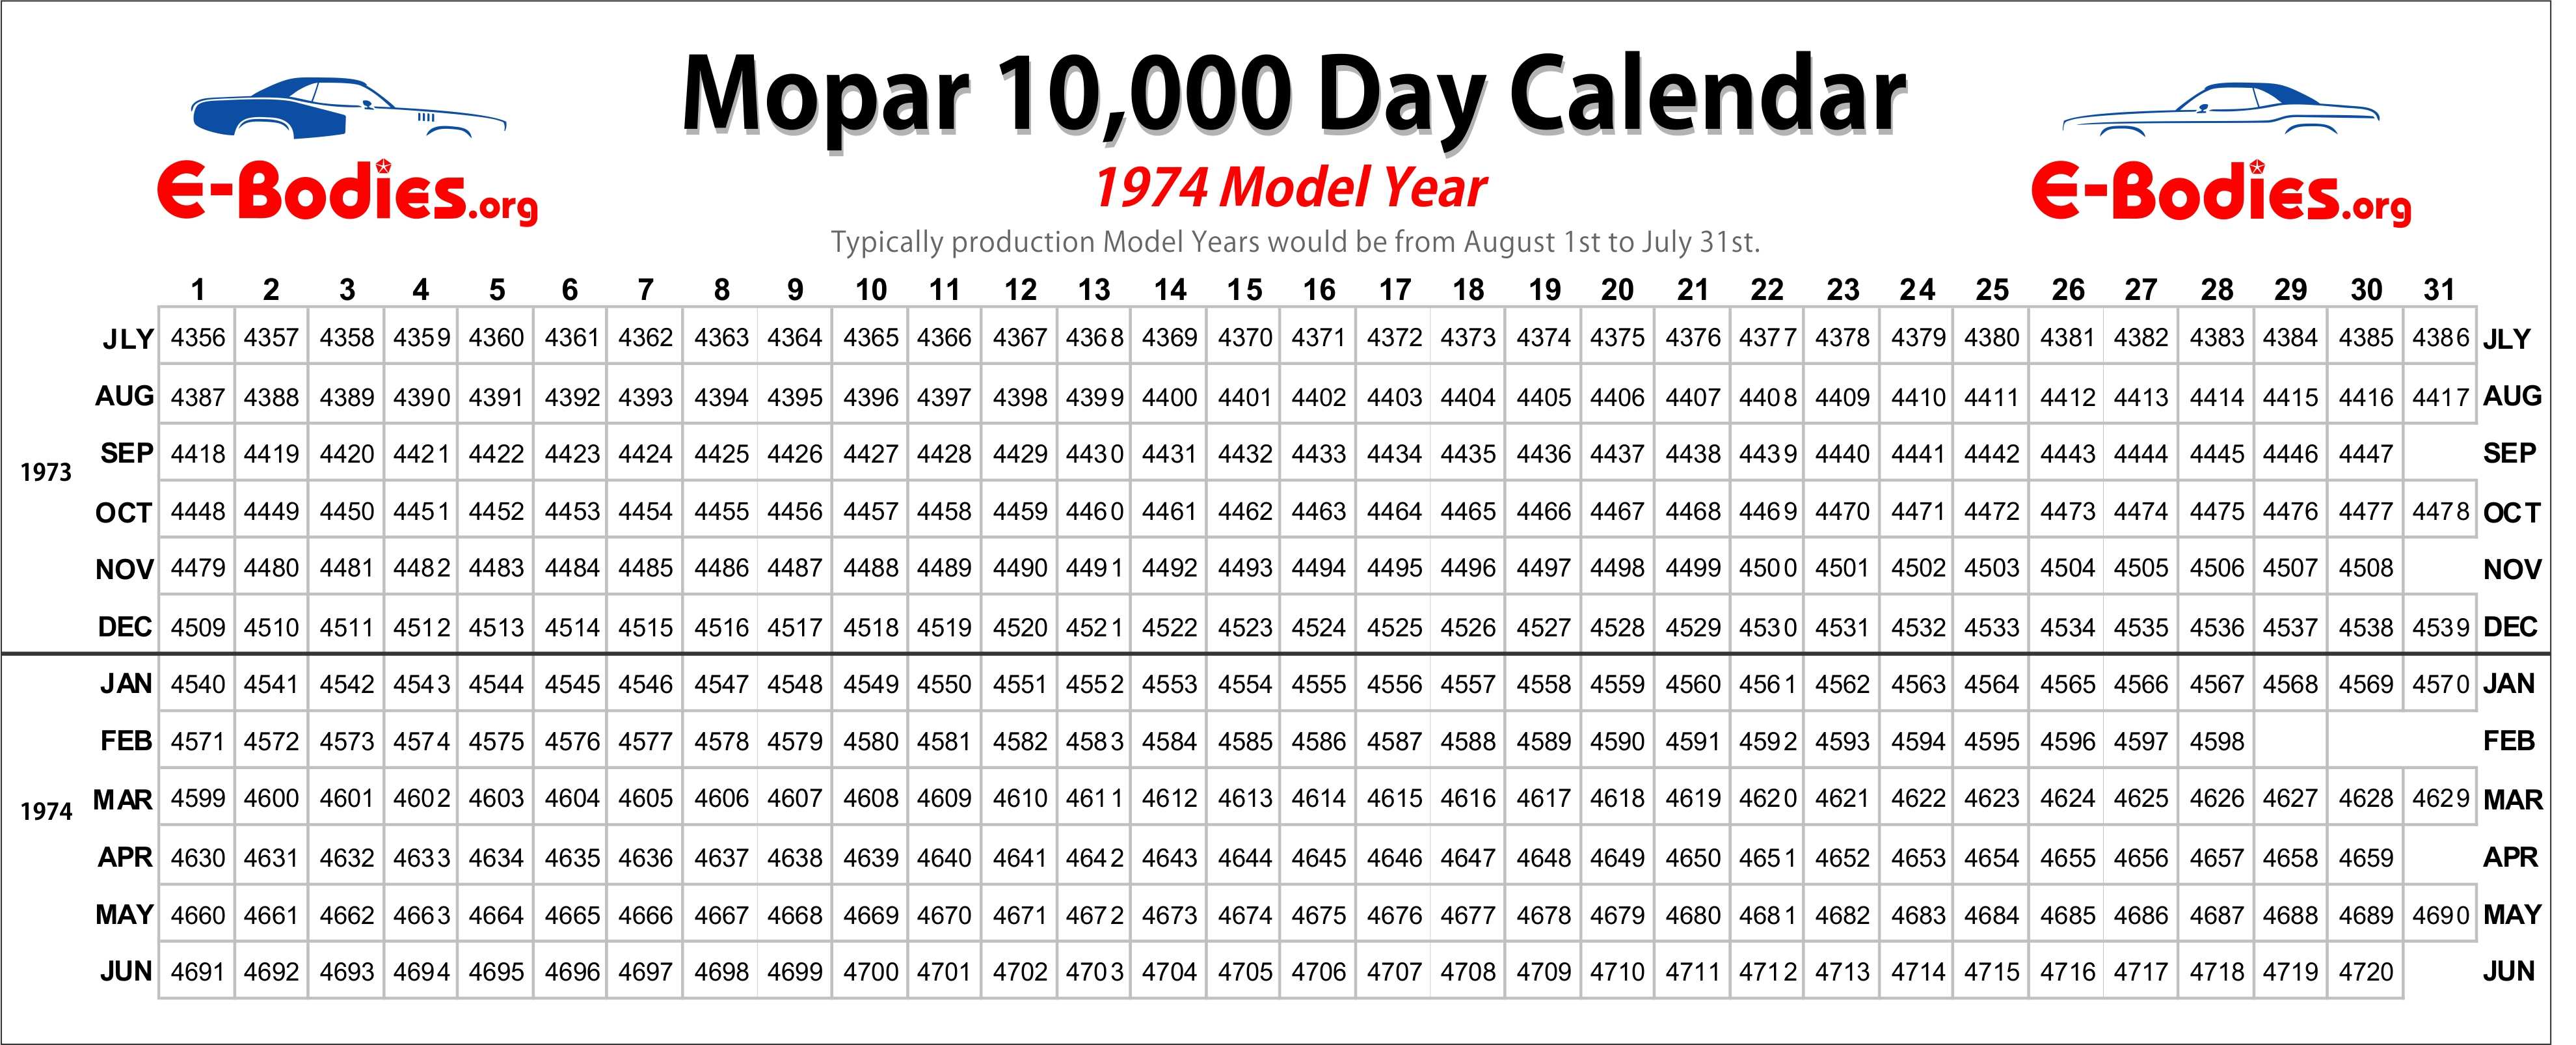 Mopar-10000-Day-Calendar-1974-1.jpg